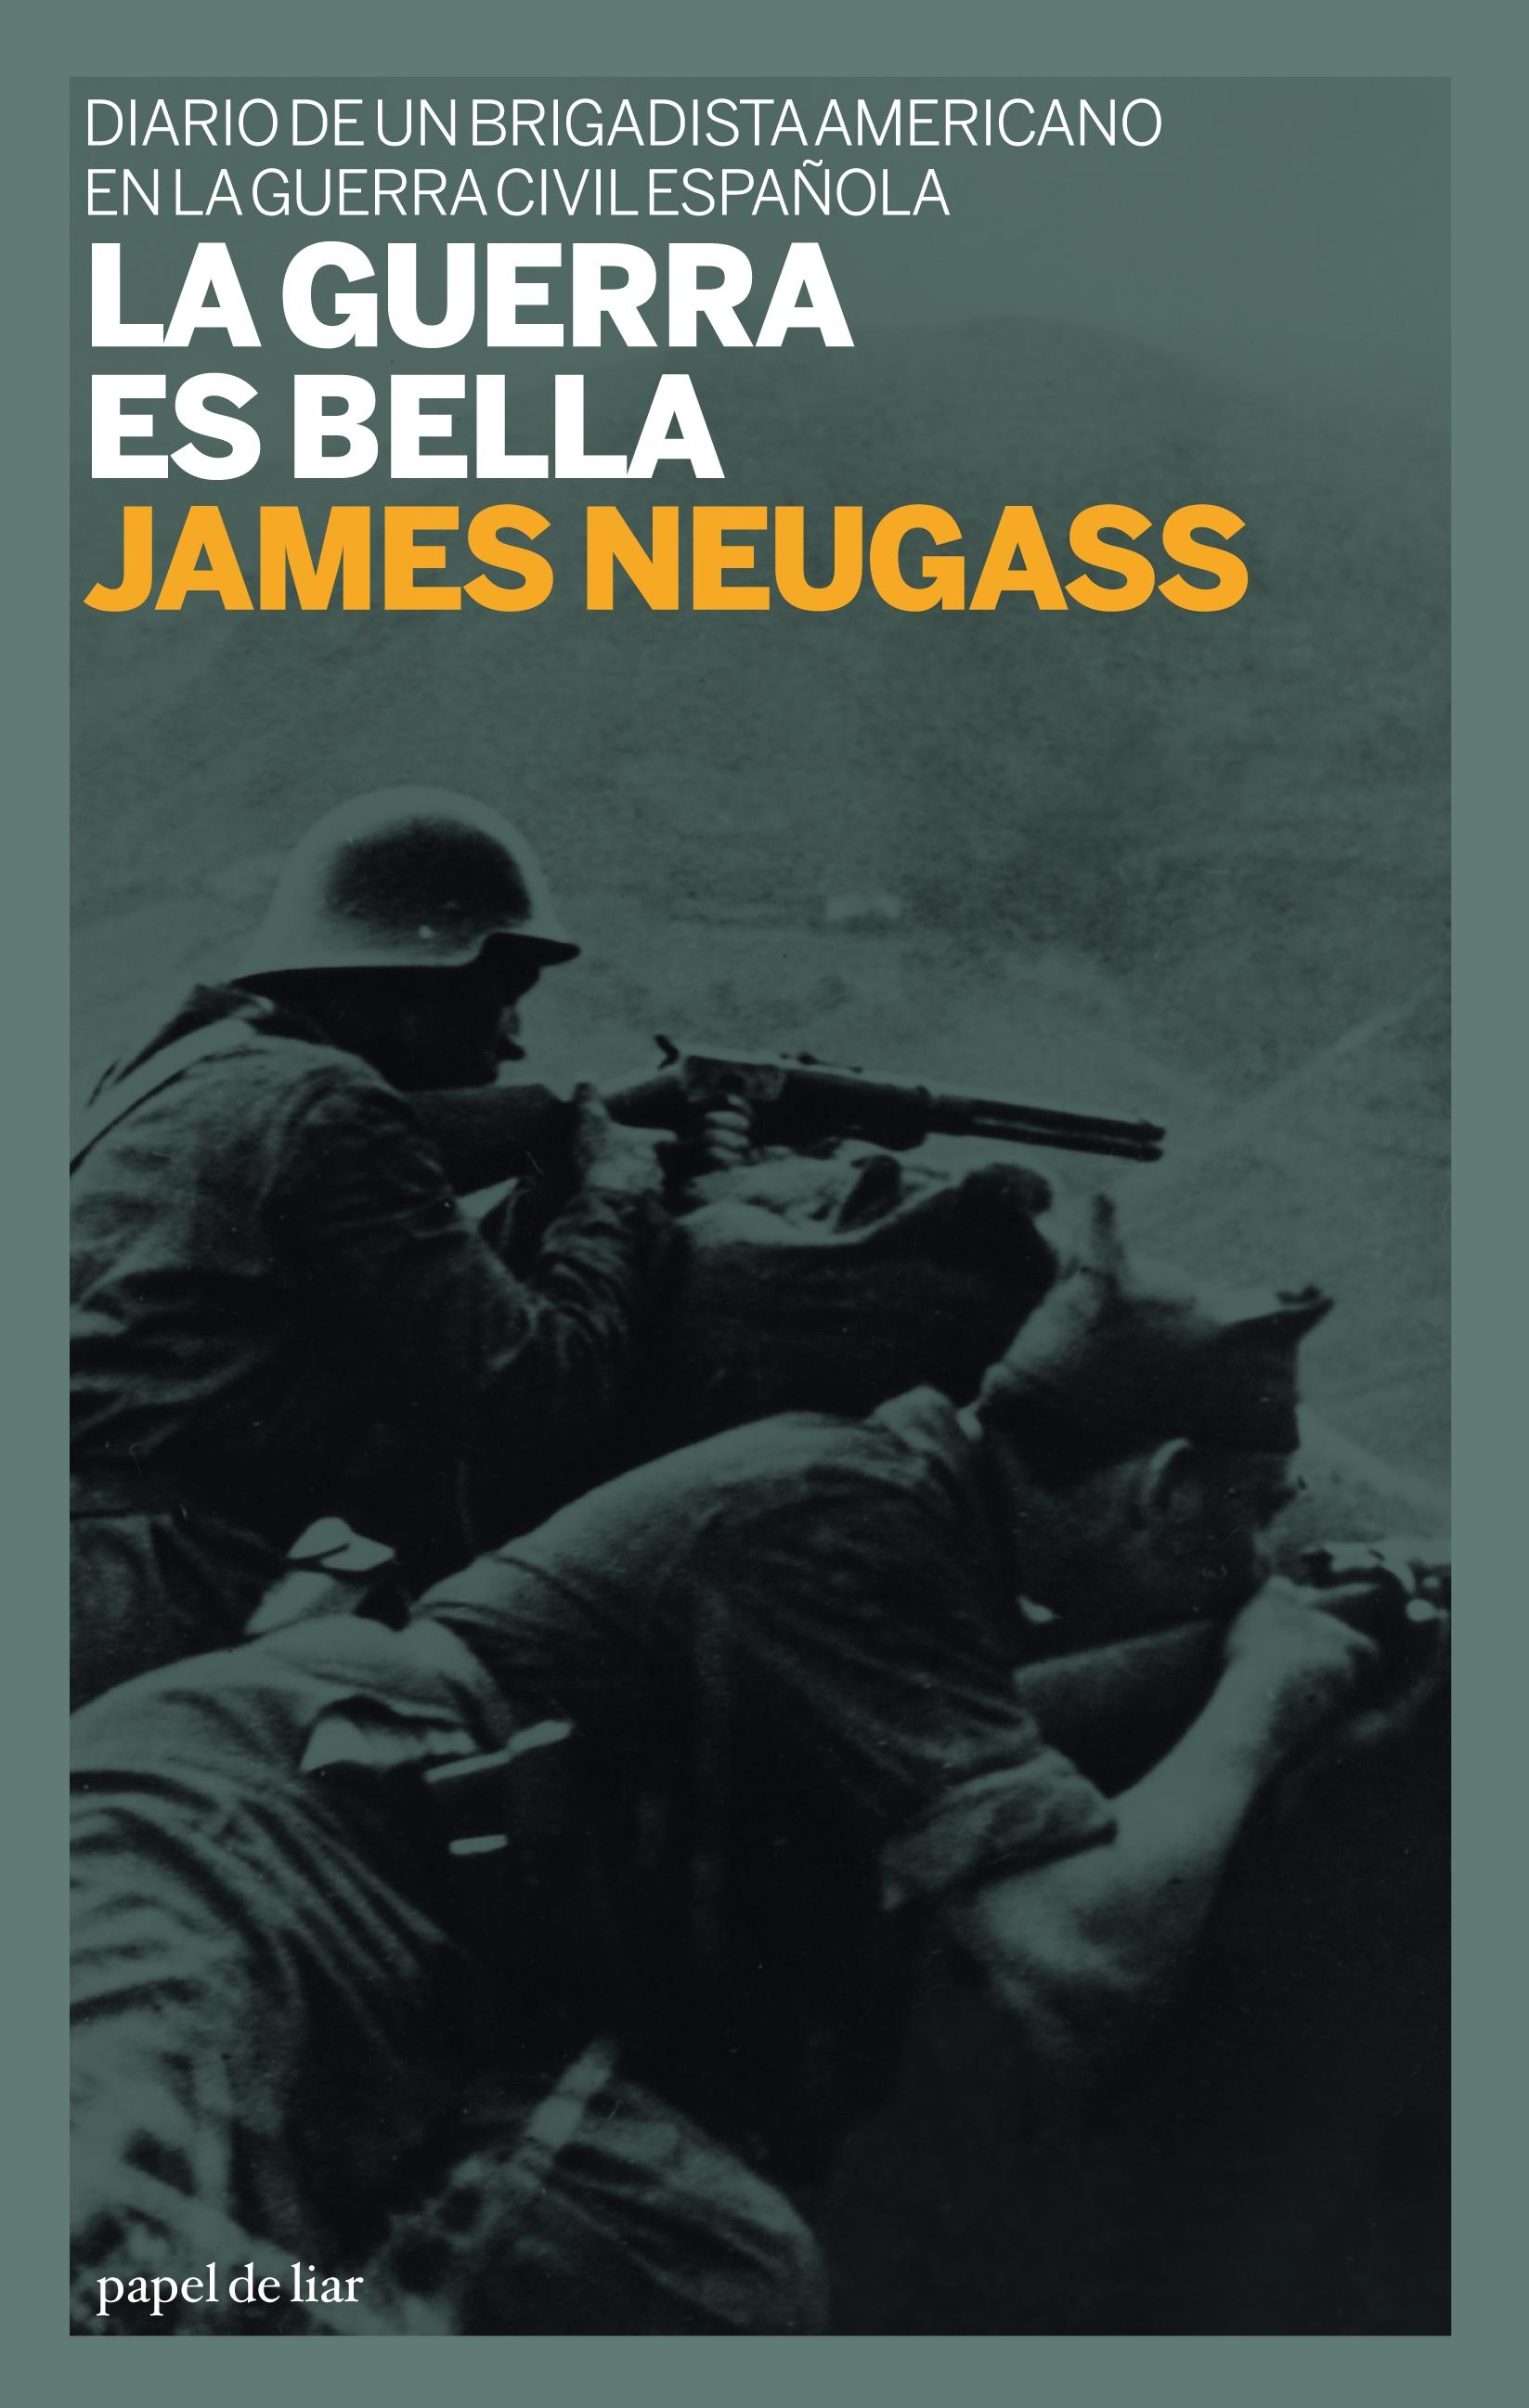 La guerra es bella "Diario de un brigadista americano en la Guerra Civil española"